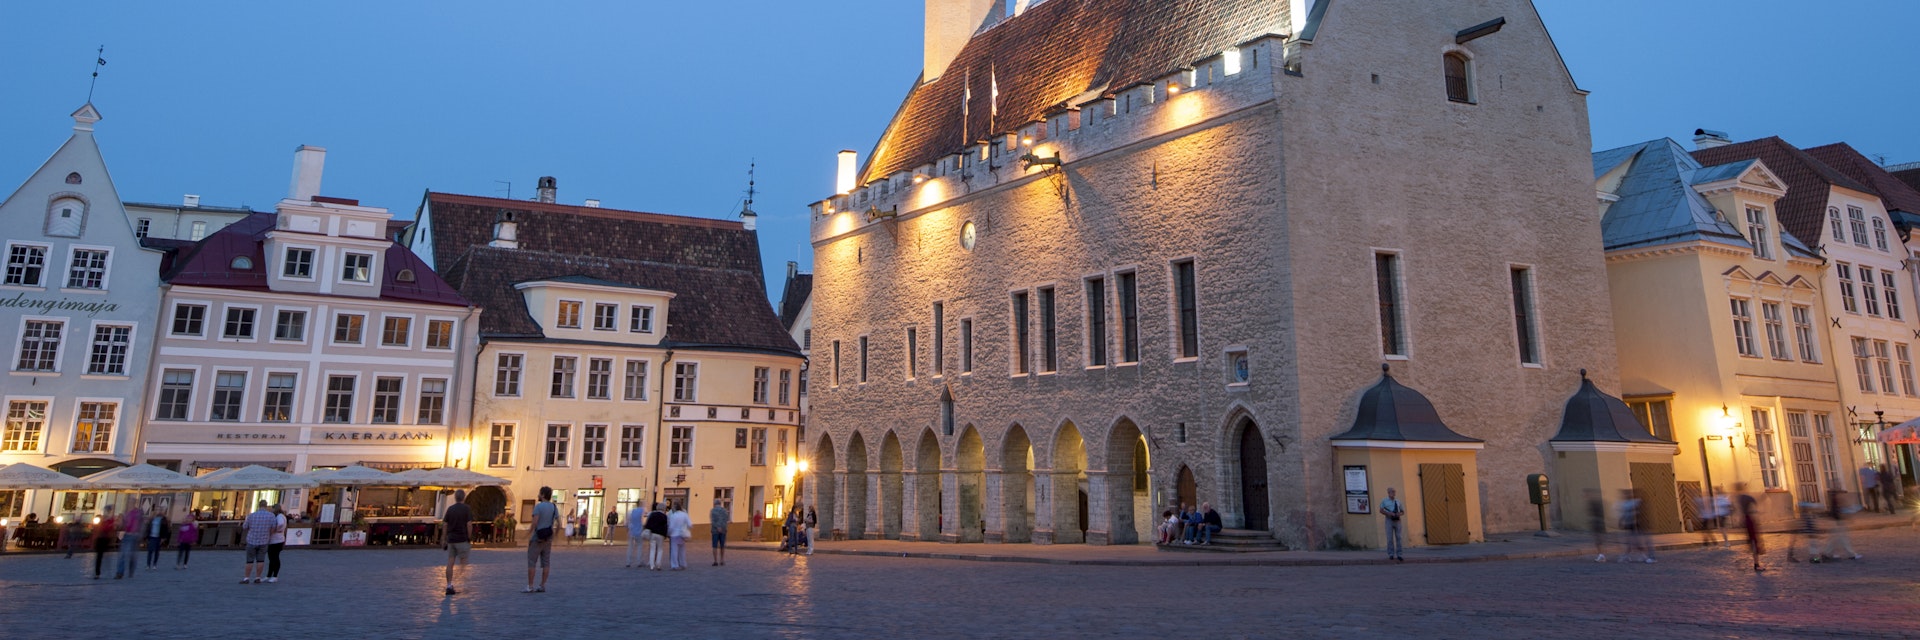 Tallinn Town Hall at dusk